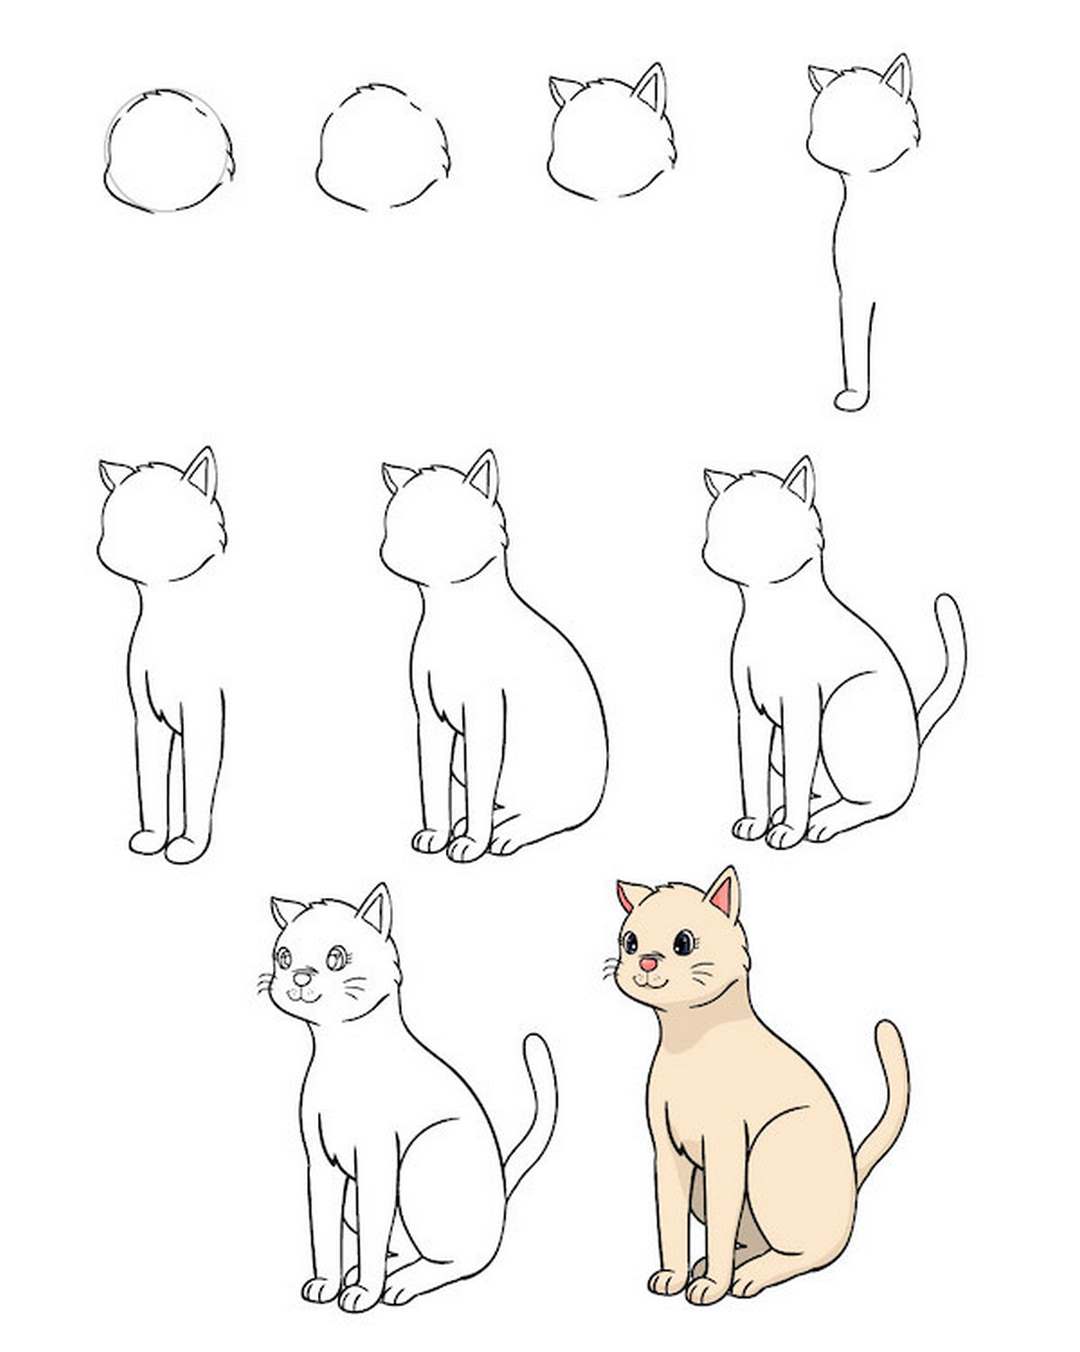 Hướng dẫn vẽ con mèo  YouTube  Mèo Chủ đề Mầm non